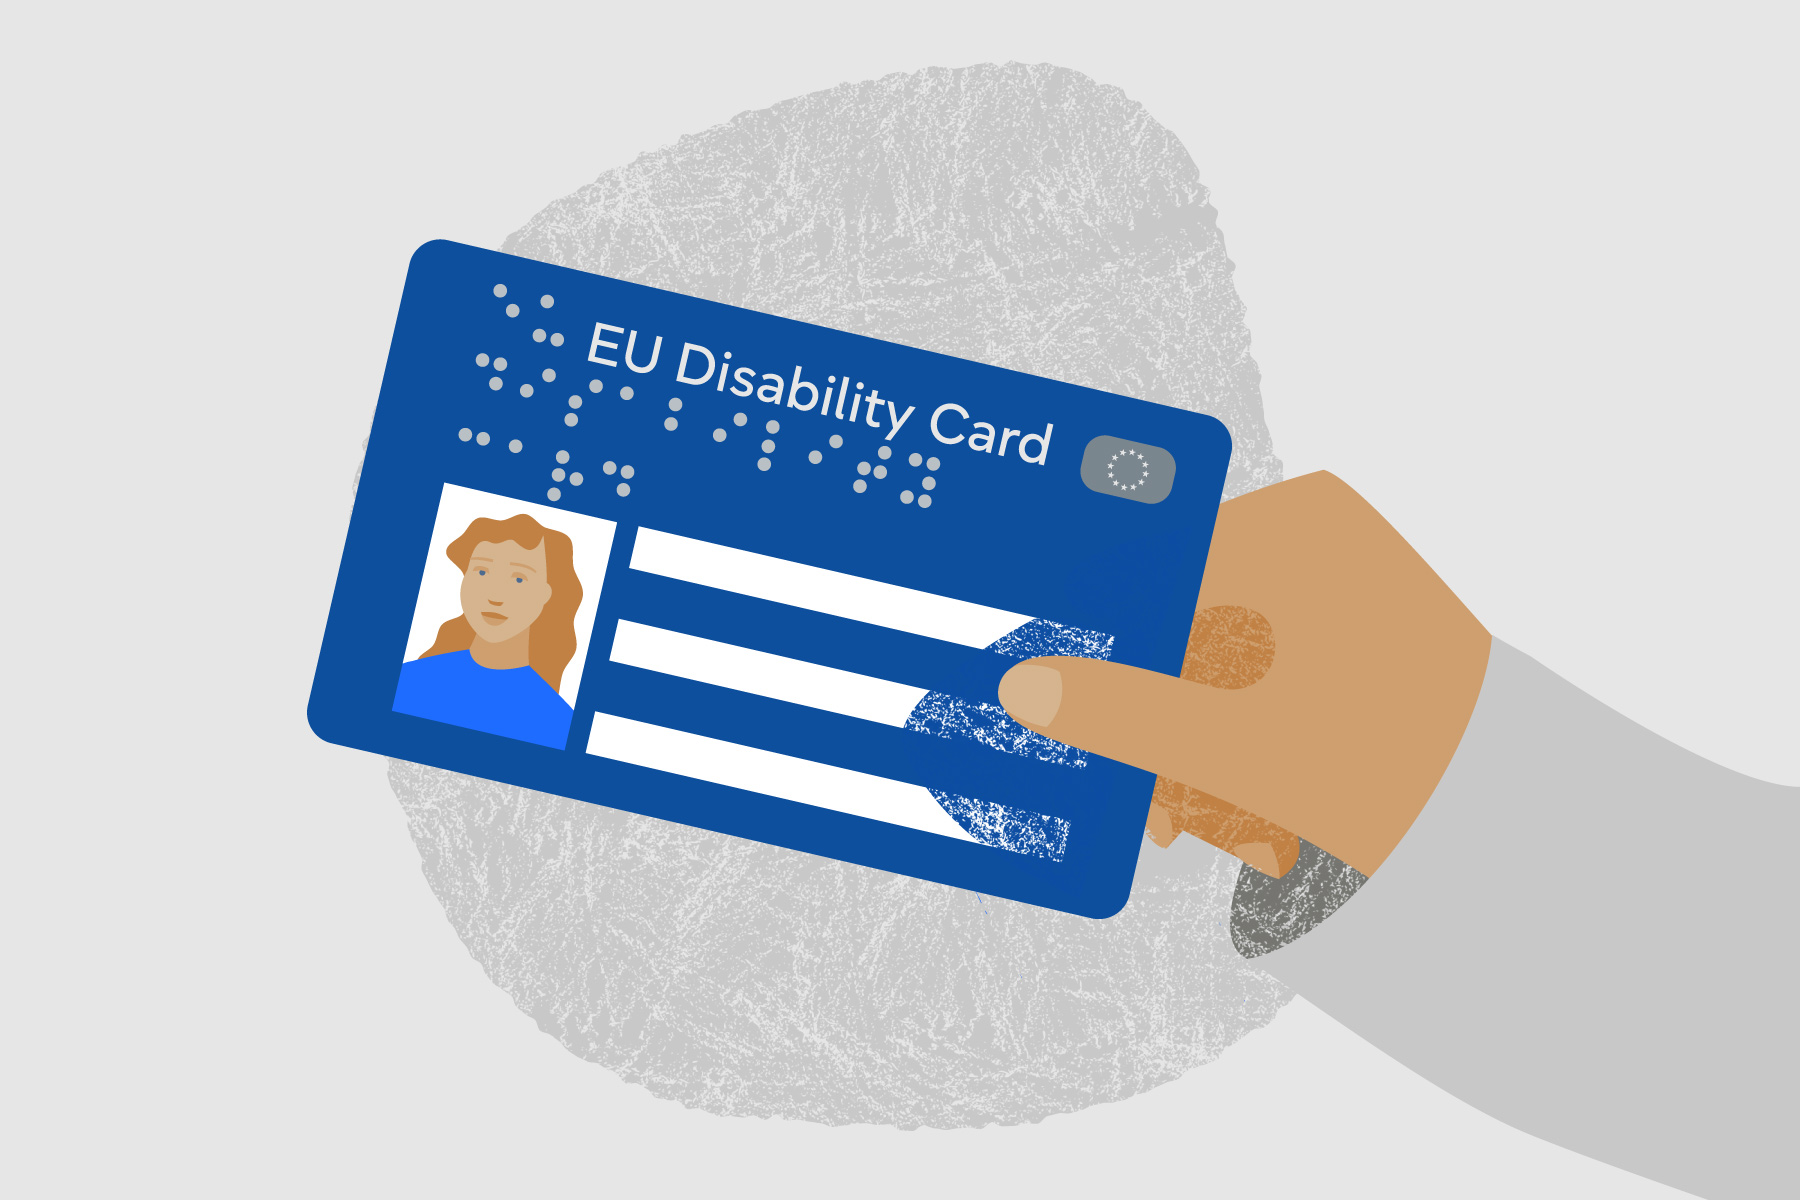 L’Unione Europea più inclusiva con la carta di disabilità e parcheggio